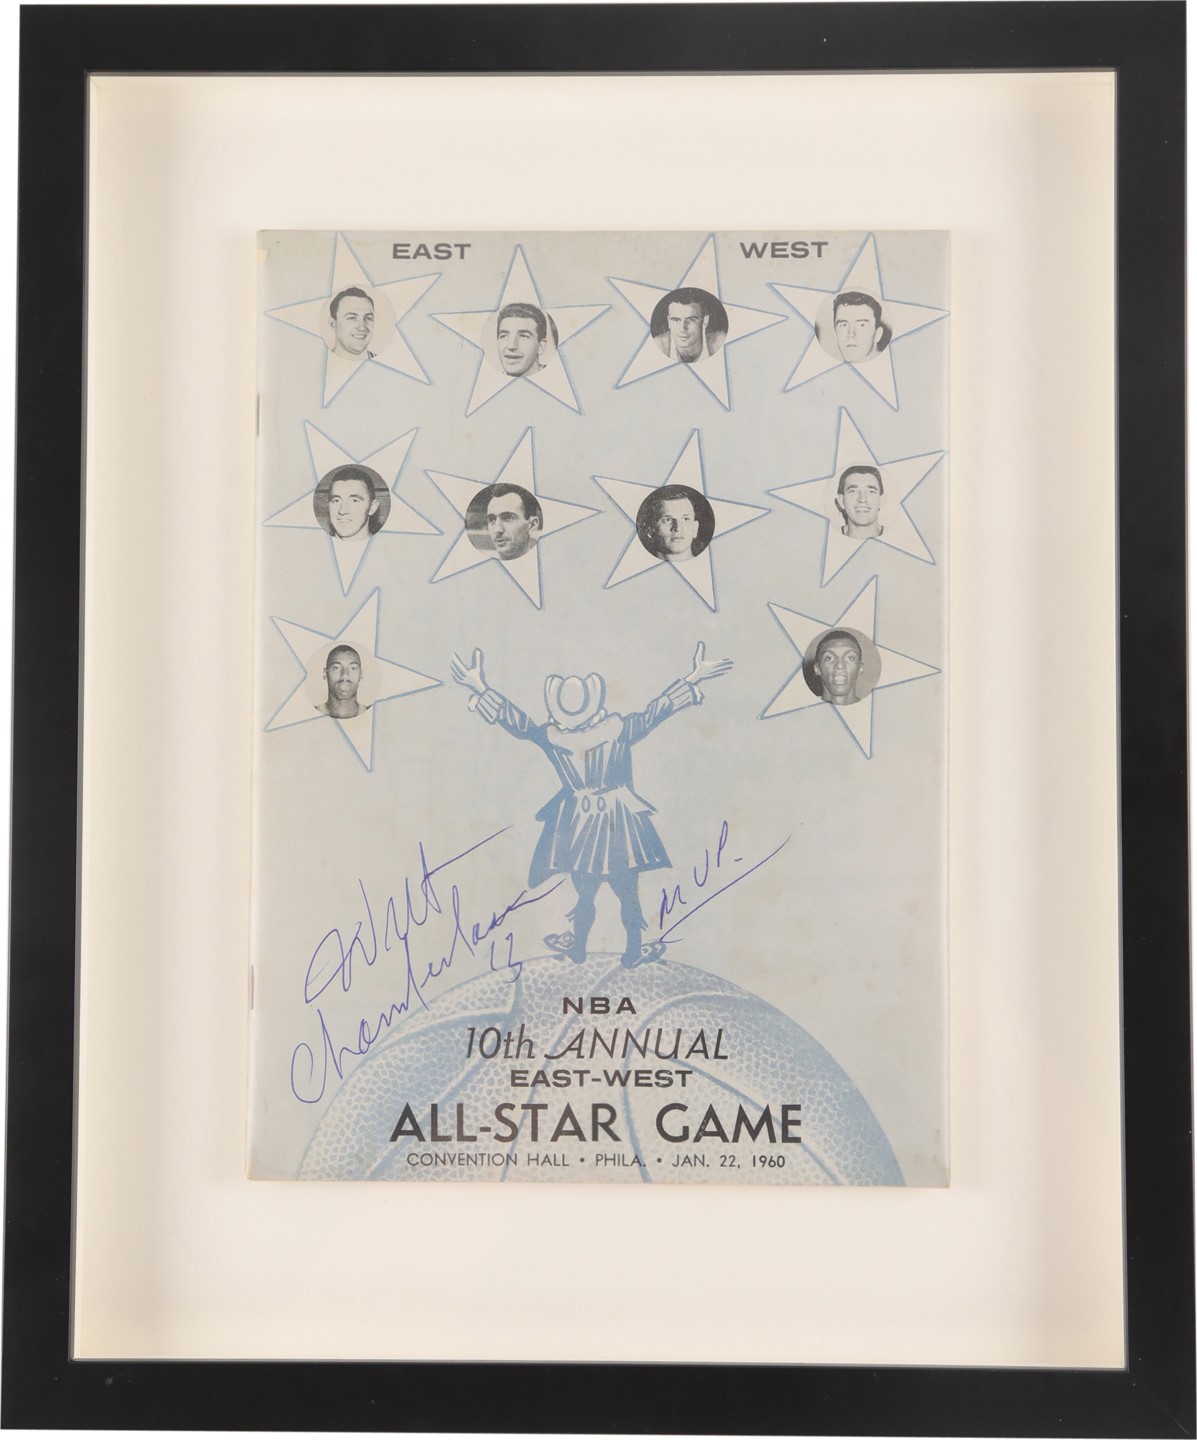 - 1960 Wilt Chamberlain Signed NBA All Star Game Program with "MVP" Inscription